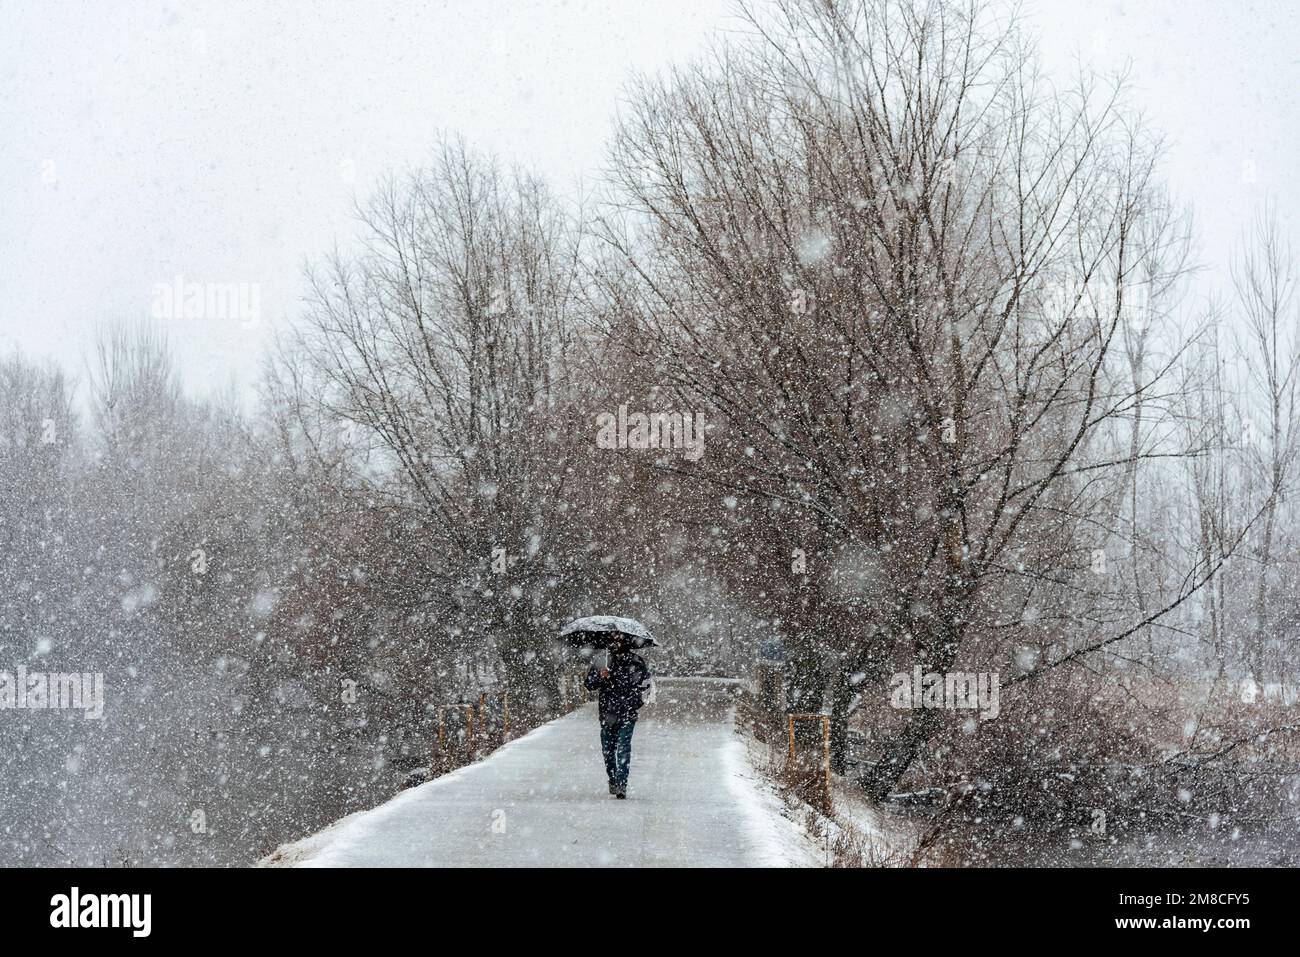 Un uomo con un ombrello cammina lungo una strada innevata durante le nevicate. Il Kashmir ha ricevuto nevicate fresche, con le cali più alte della valle che hanno ricevuto nevicate da moderate a pesanti e nevicate da leggere a moderate in pianura, causando una visibilità distruttiva. Questo ha influito sulle operazioni di volo insieme alla chiusura dell'autostrada nazionale Srinagar-Jammu. Foto Stock